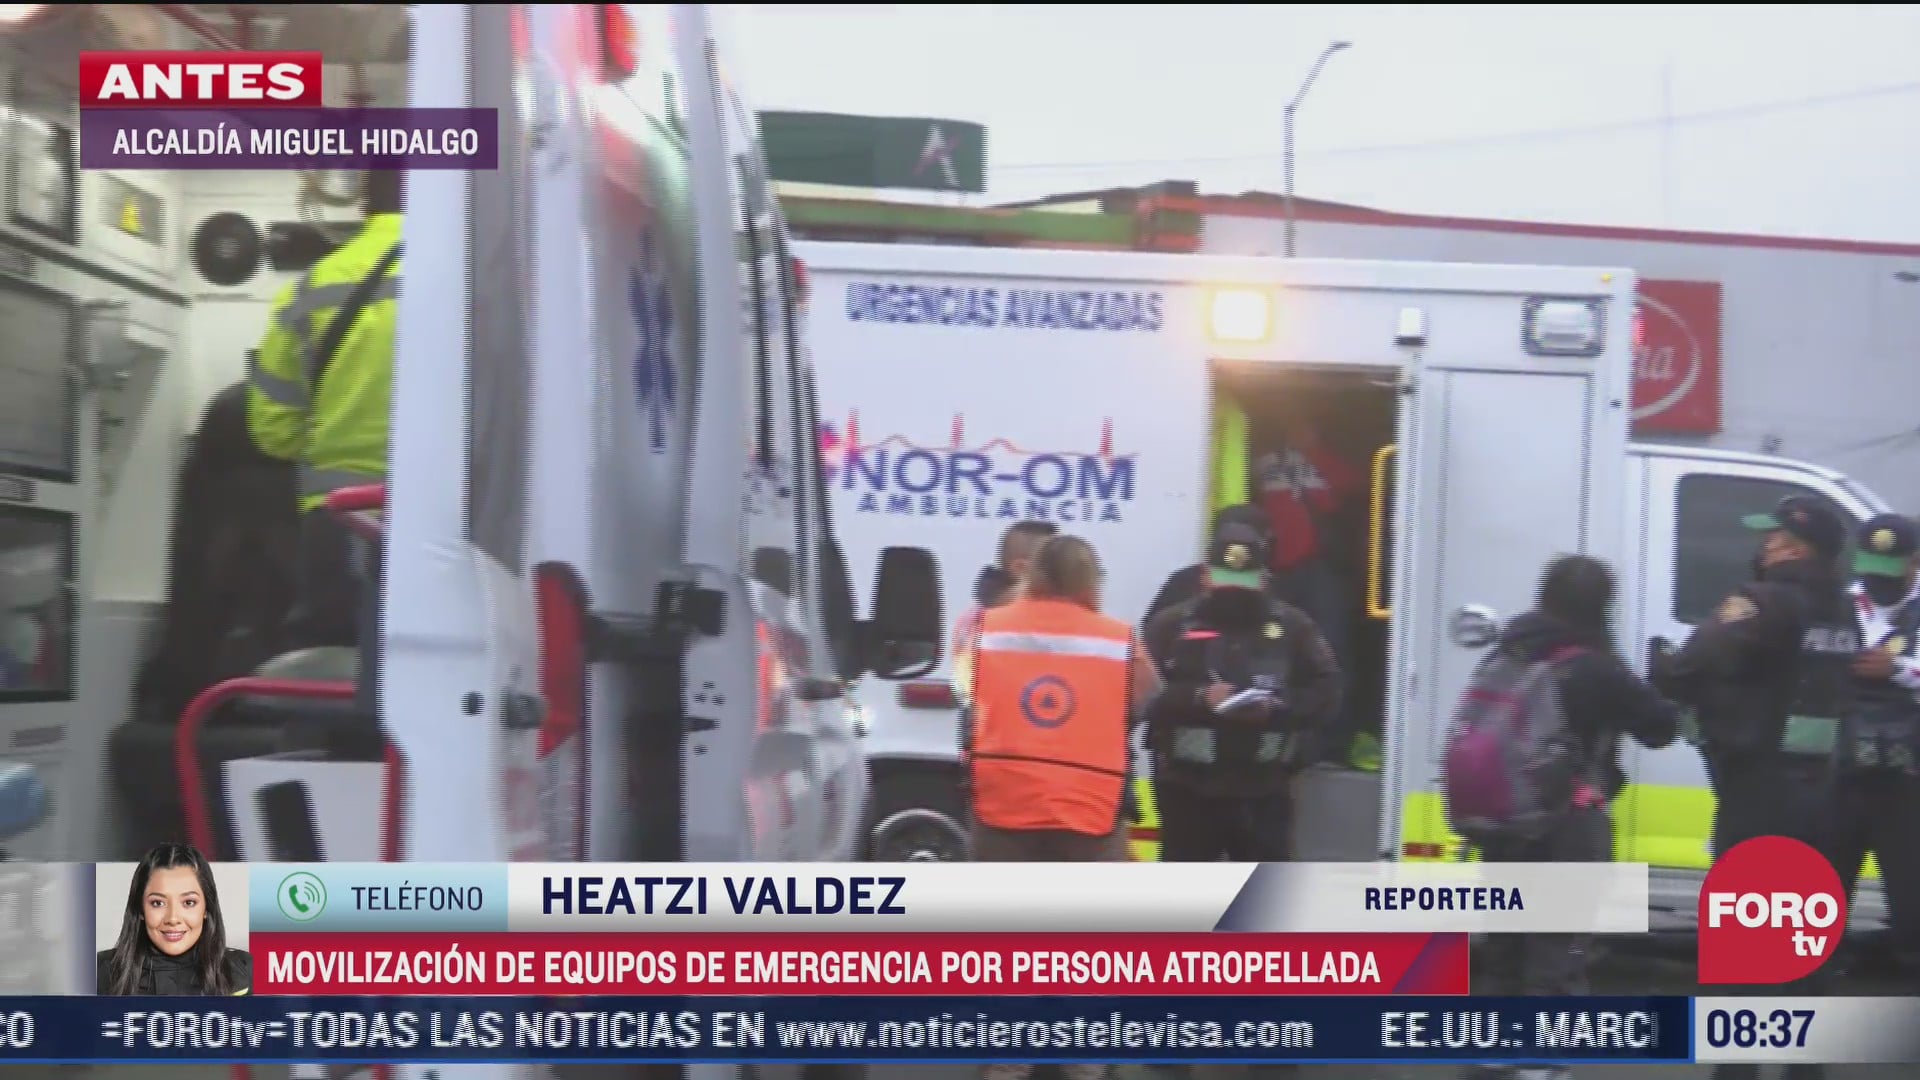 paramedicos atienden a persona atropellada en cetram tacubaya cdmx